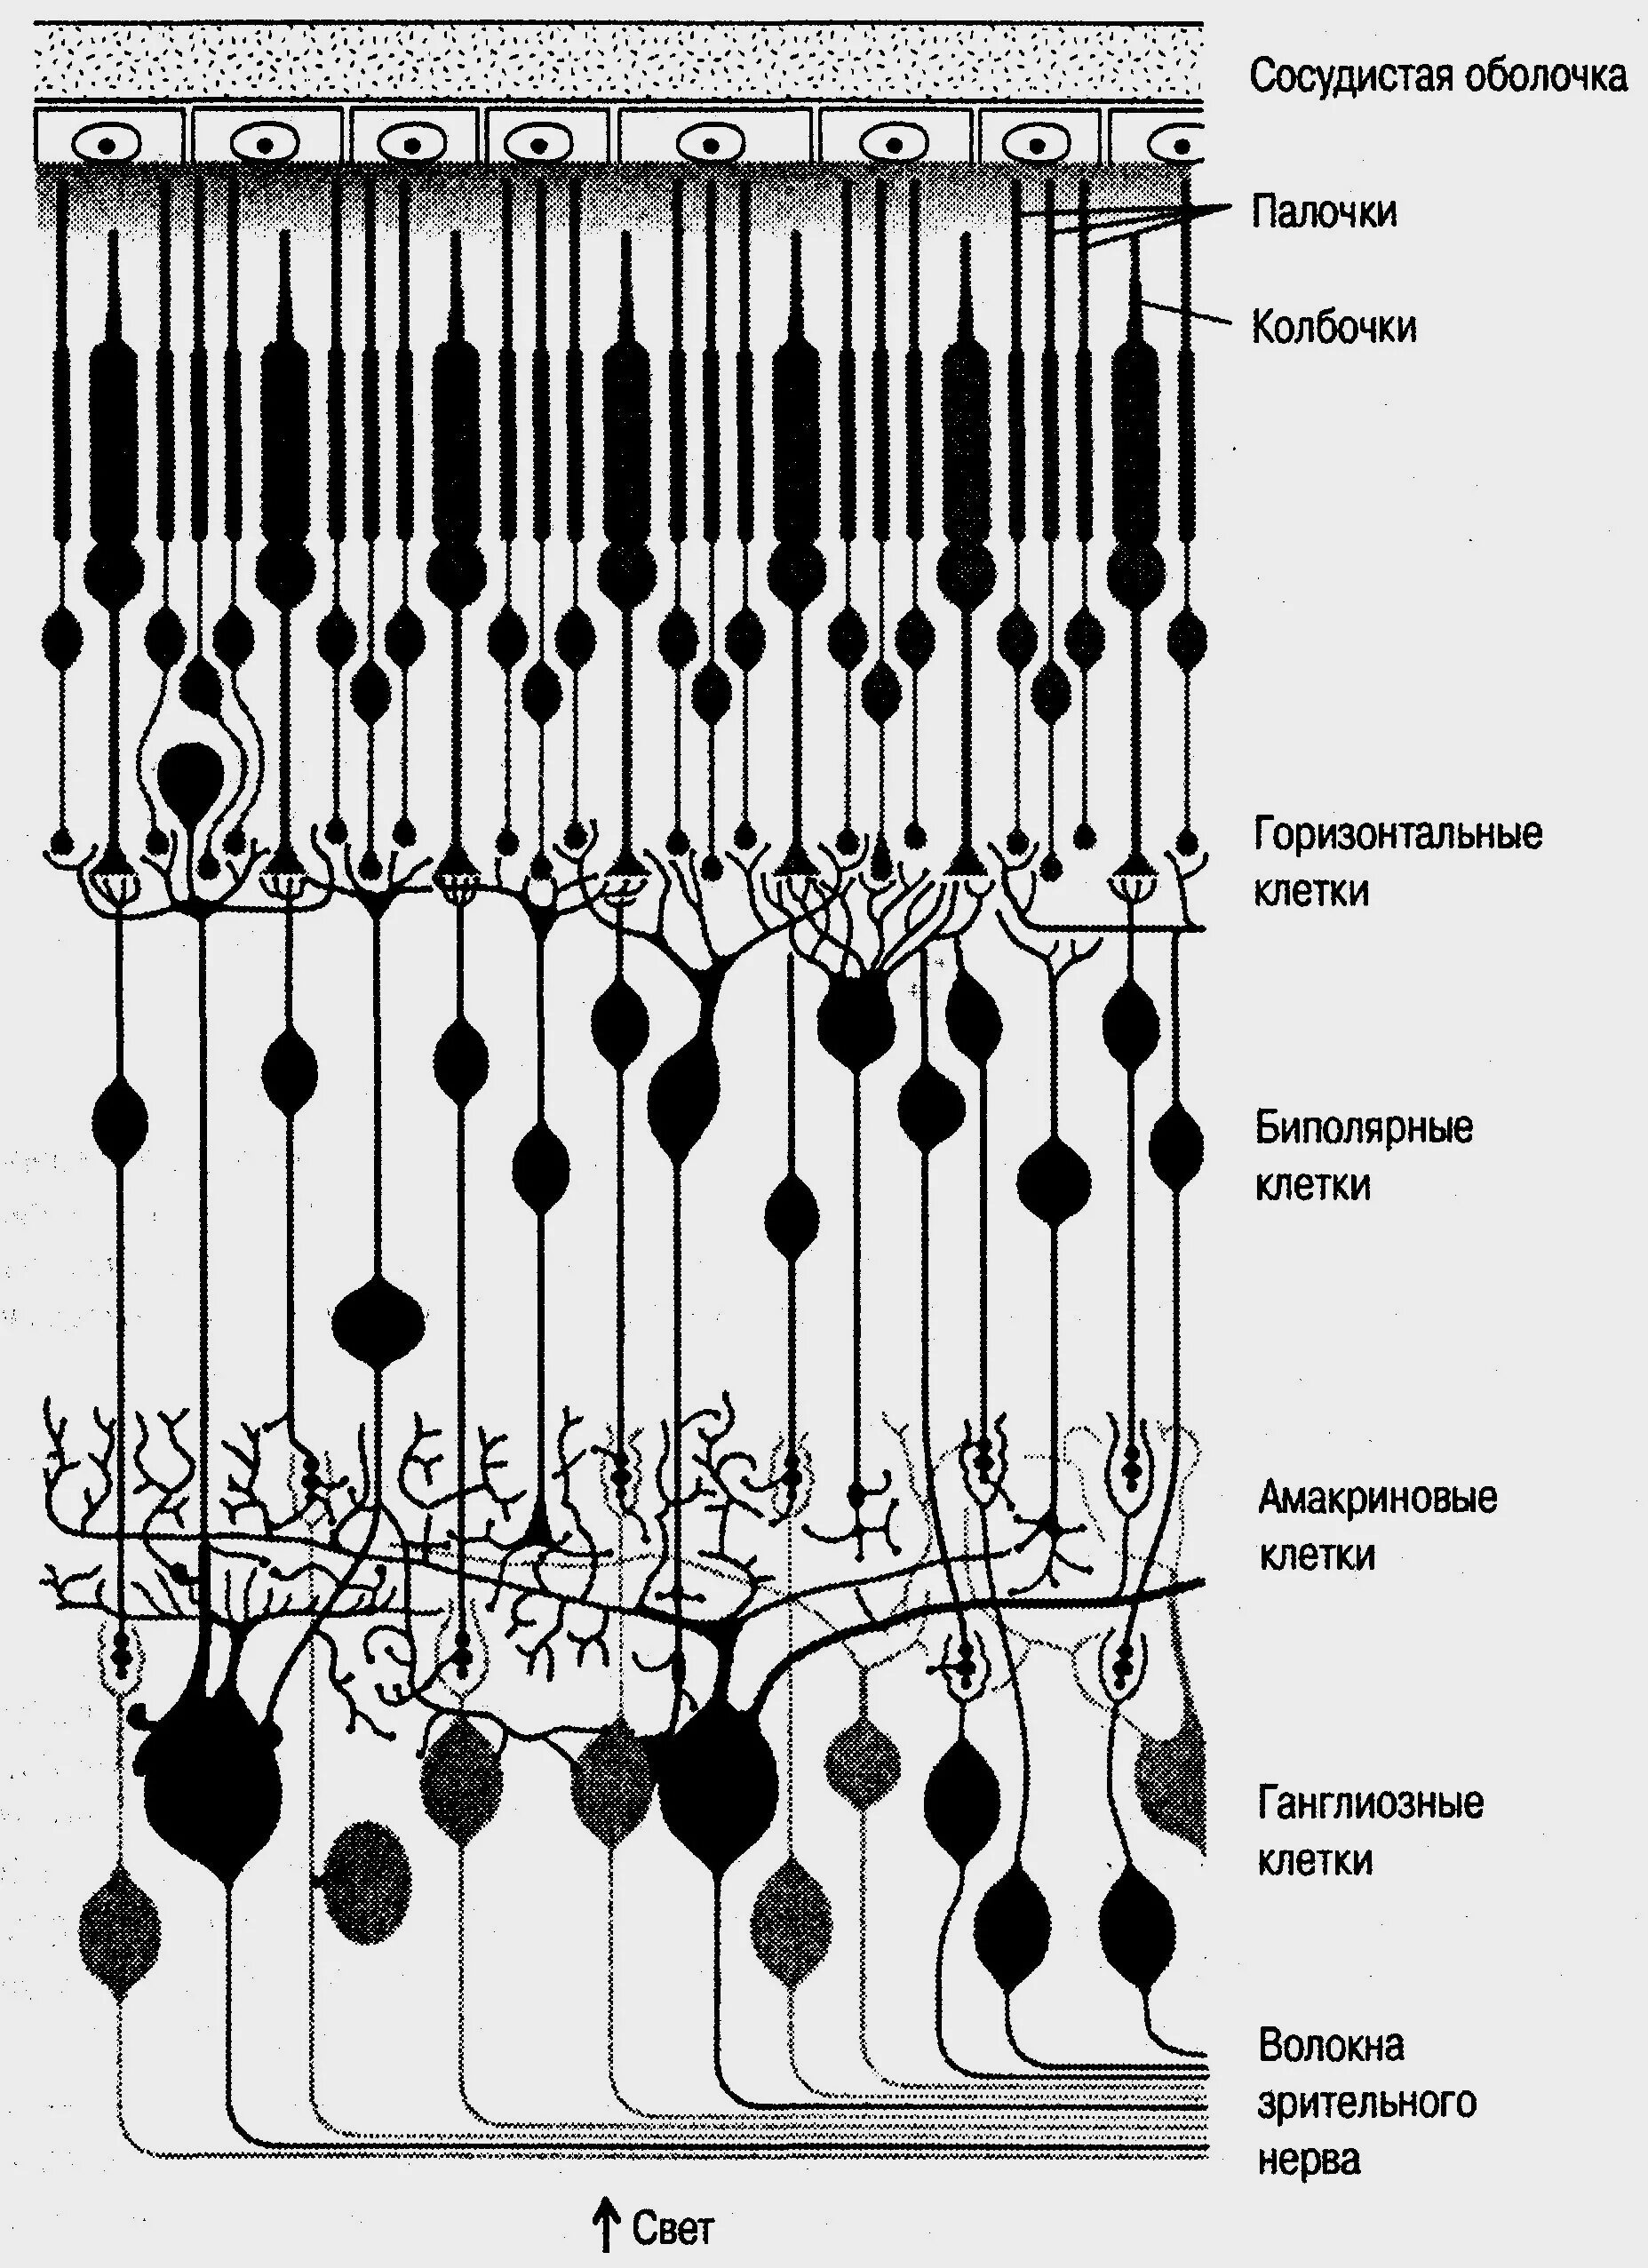 Строение сетчатки рисунок. Строение сетчатки нейронный состав сетчатки. Палочки и колбочки сетчатки гистология. Схема нейронного состава сетчатки глаза. Палочки и колбочки сетчатки строение.